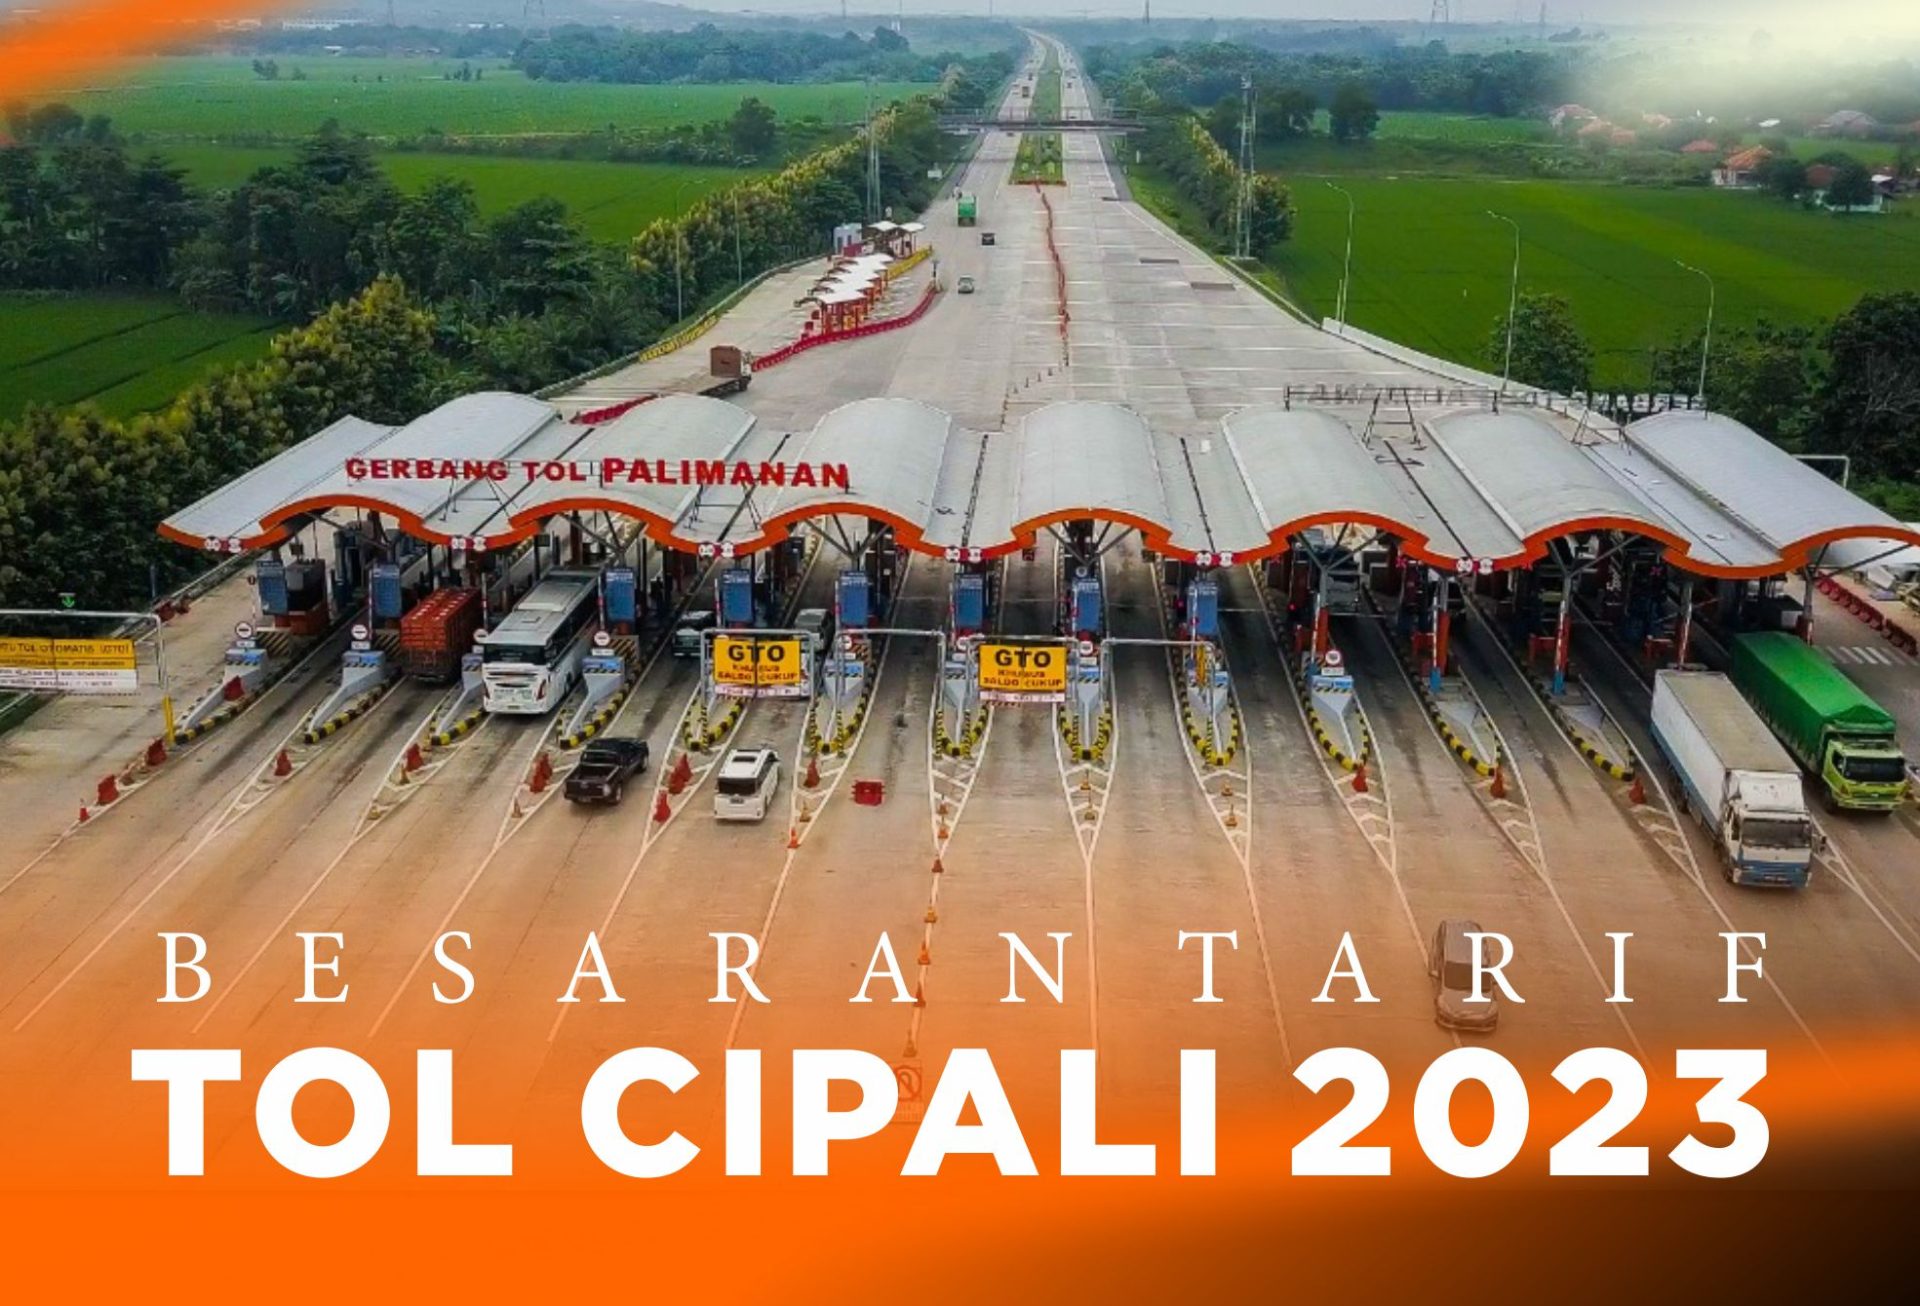 Tarif Tol Cipali Terbaru 2023, Simak Besarannya !